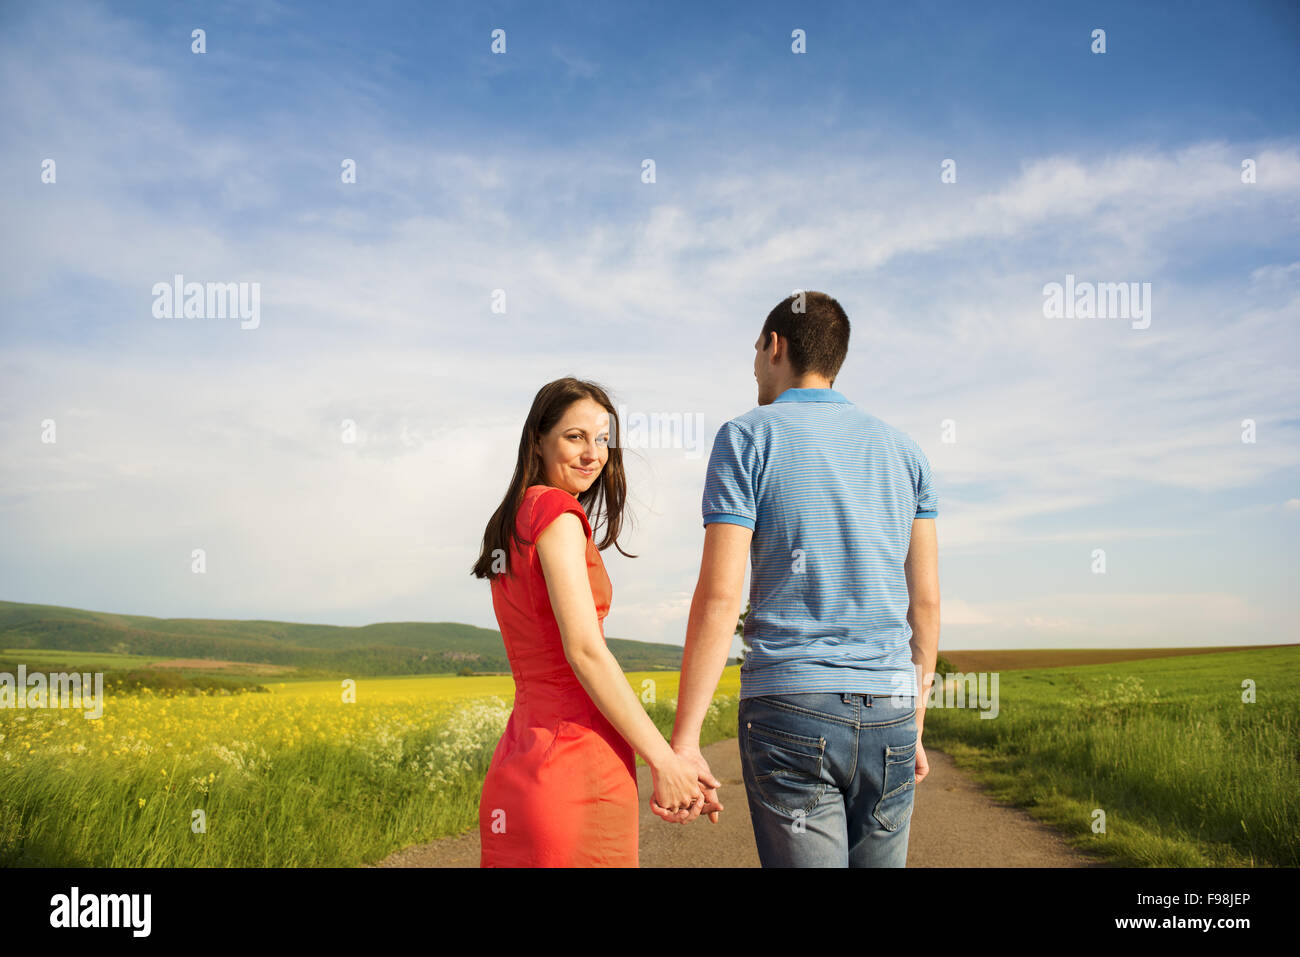 Glückliches junges Paar in Liebe zu Fuß und Hand in Hand unterwegs Landschaft neben dem Raps Feld Stockfoto